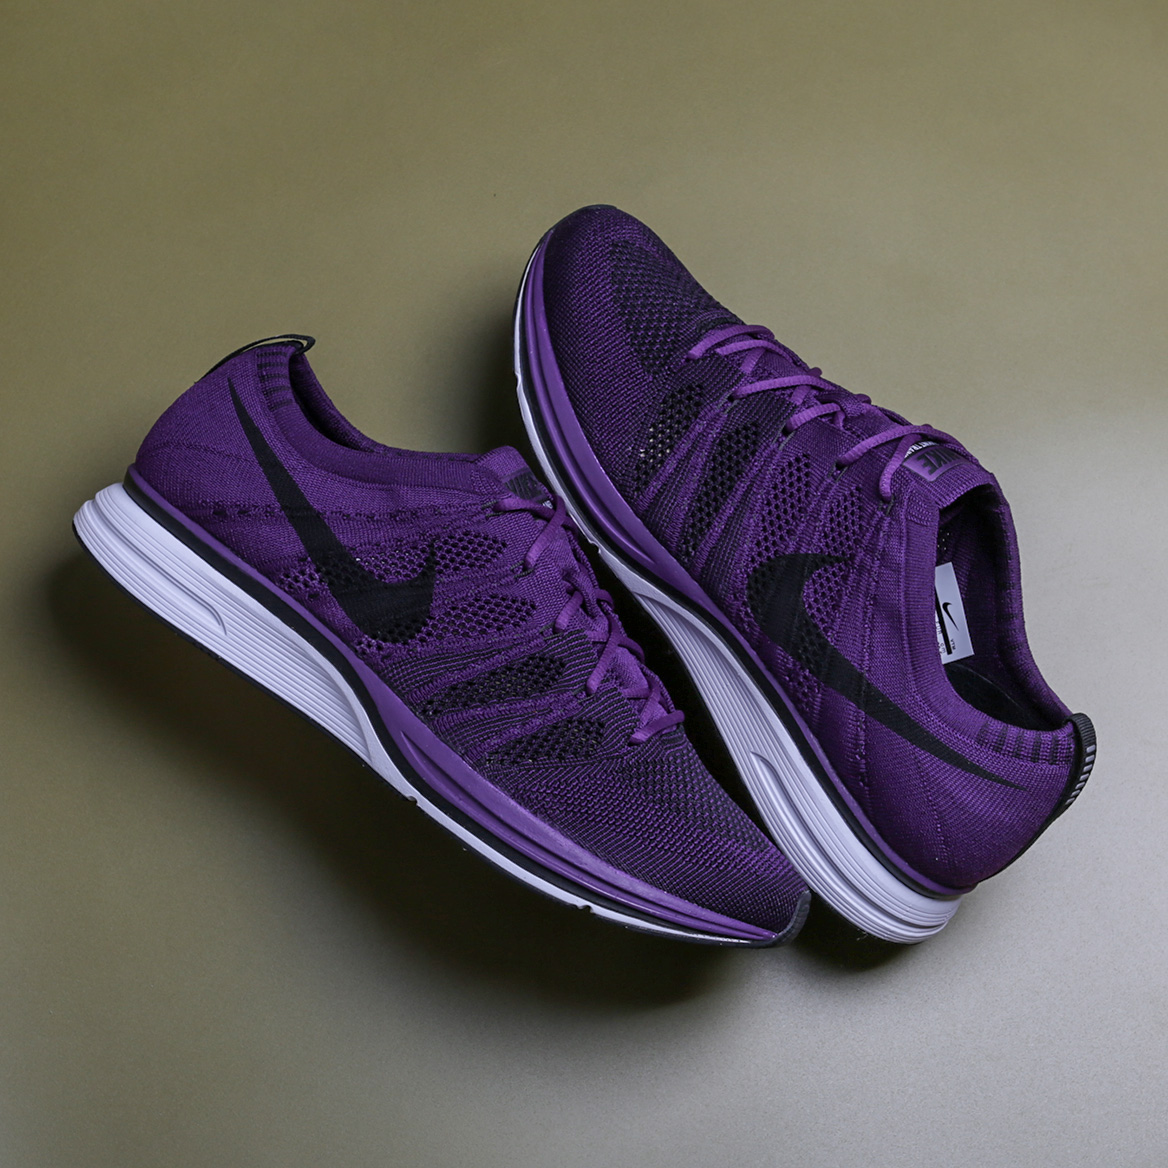 Nike фиолетовые кроссовки. Nike Flyknit Trainer фиолетовые. Фиолетовые кроссовки мужские Nike. Кеды найк фиолетовые. Nike p600 фиолетовые.